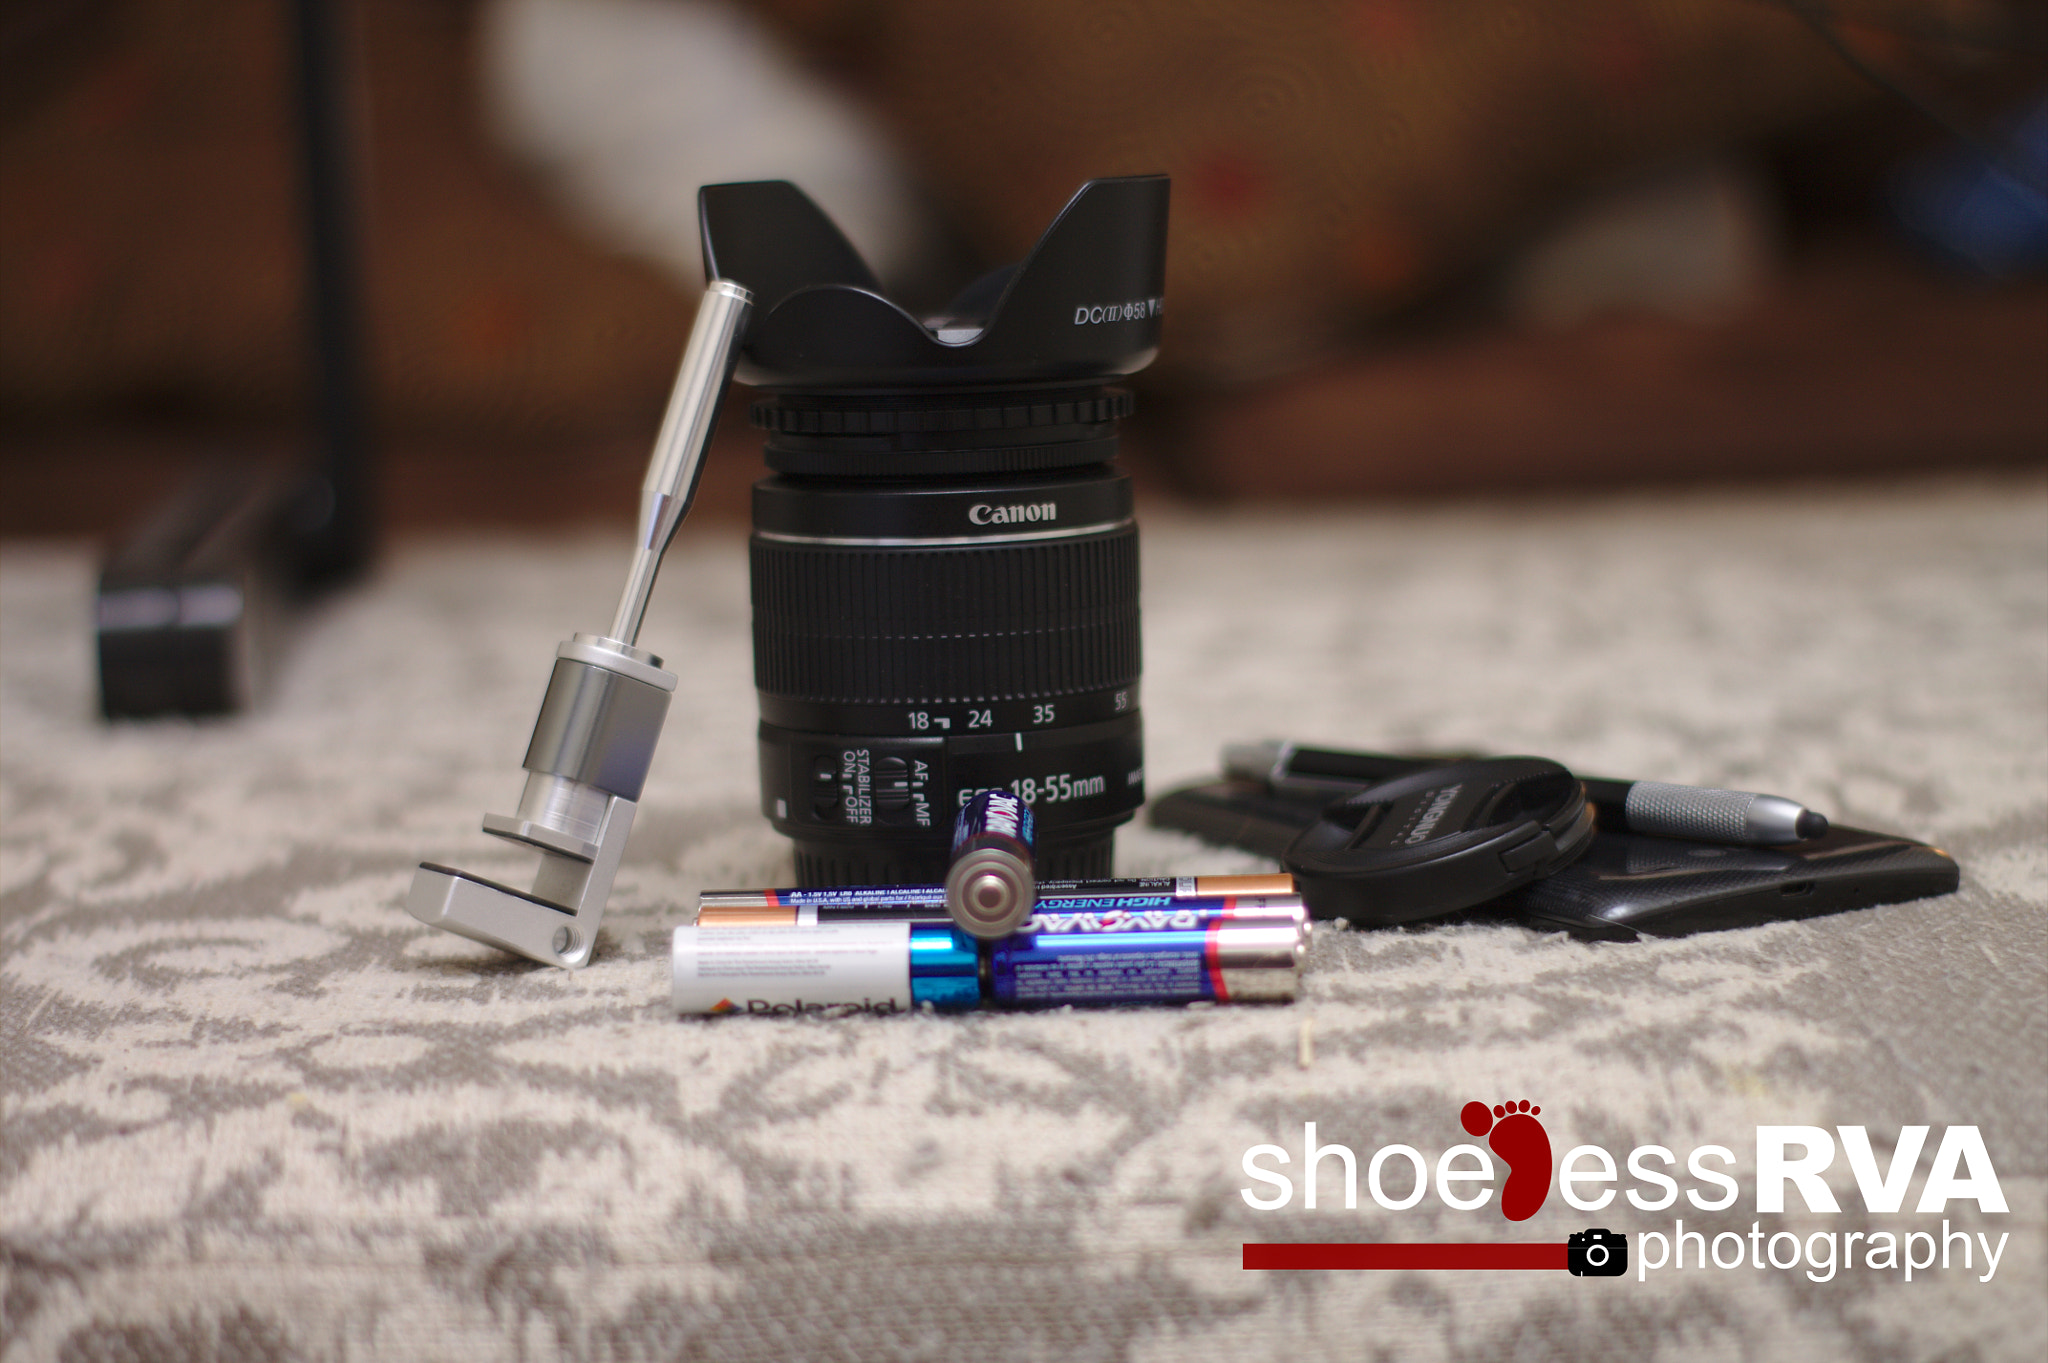 Canon EOS 1100D (EOS Rebel T3 / EOS Kiss X50) sample photo. Shooting a lens through a lens... photography